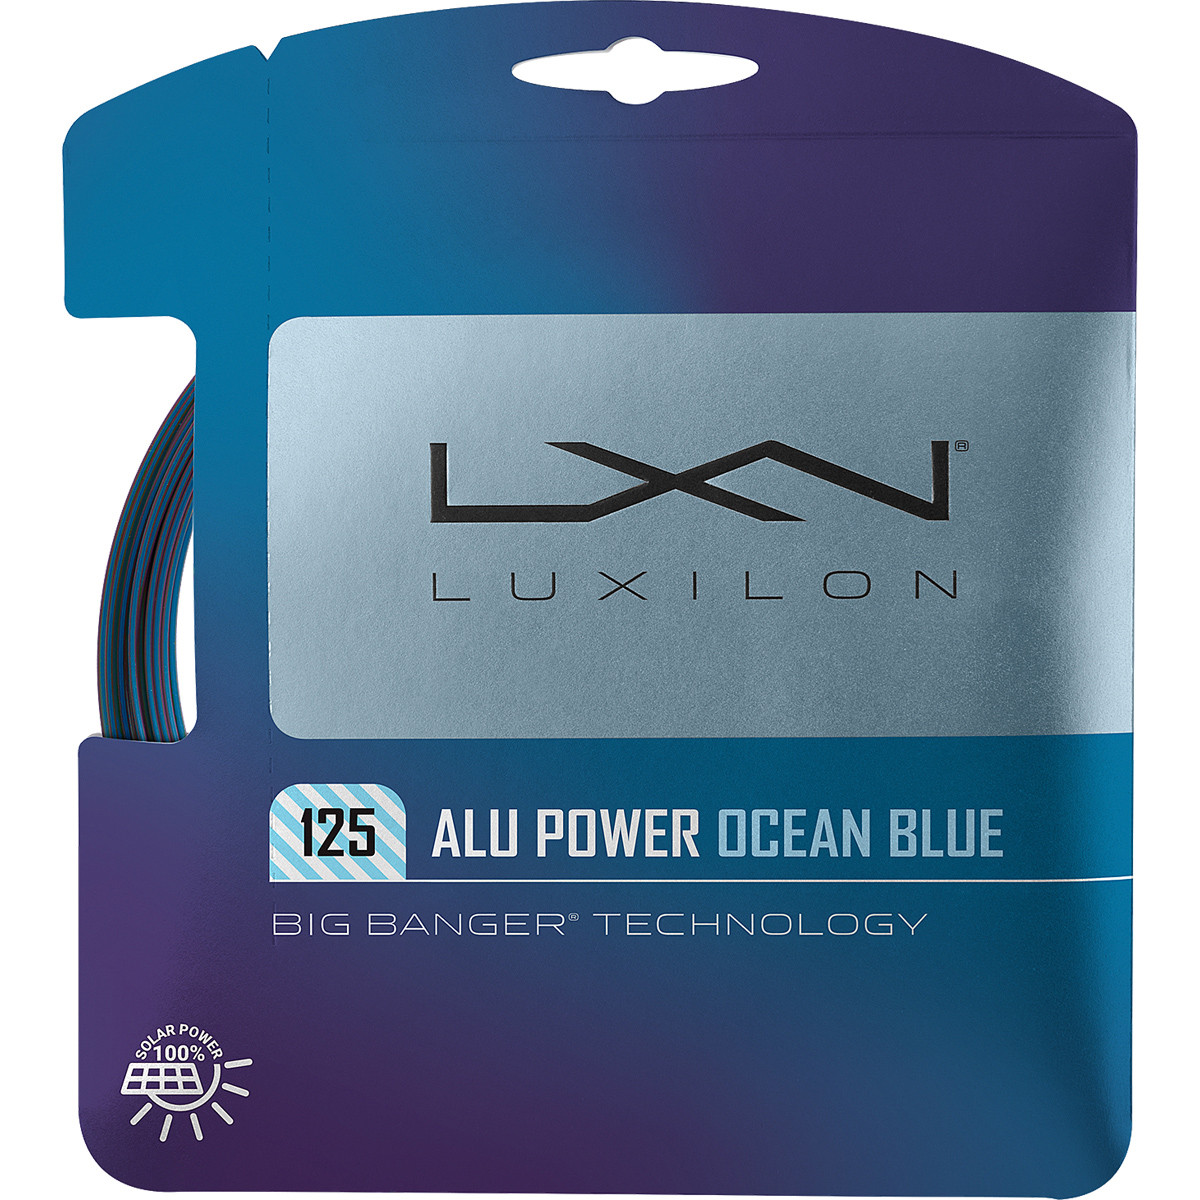 CORDAGE LUXILON BIG BANGER ALU POWER OCEAN BLUE (12 METRES)